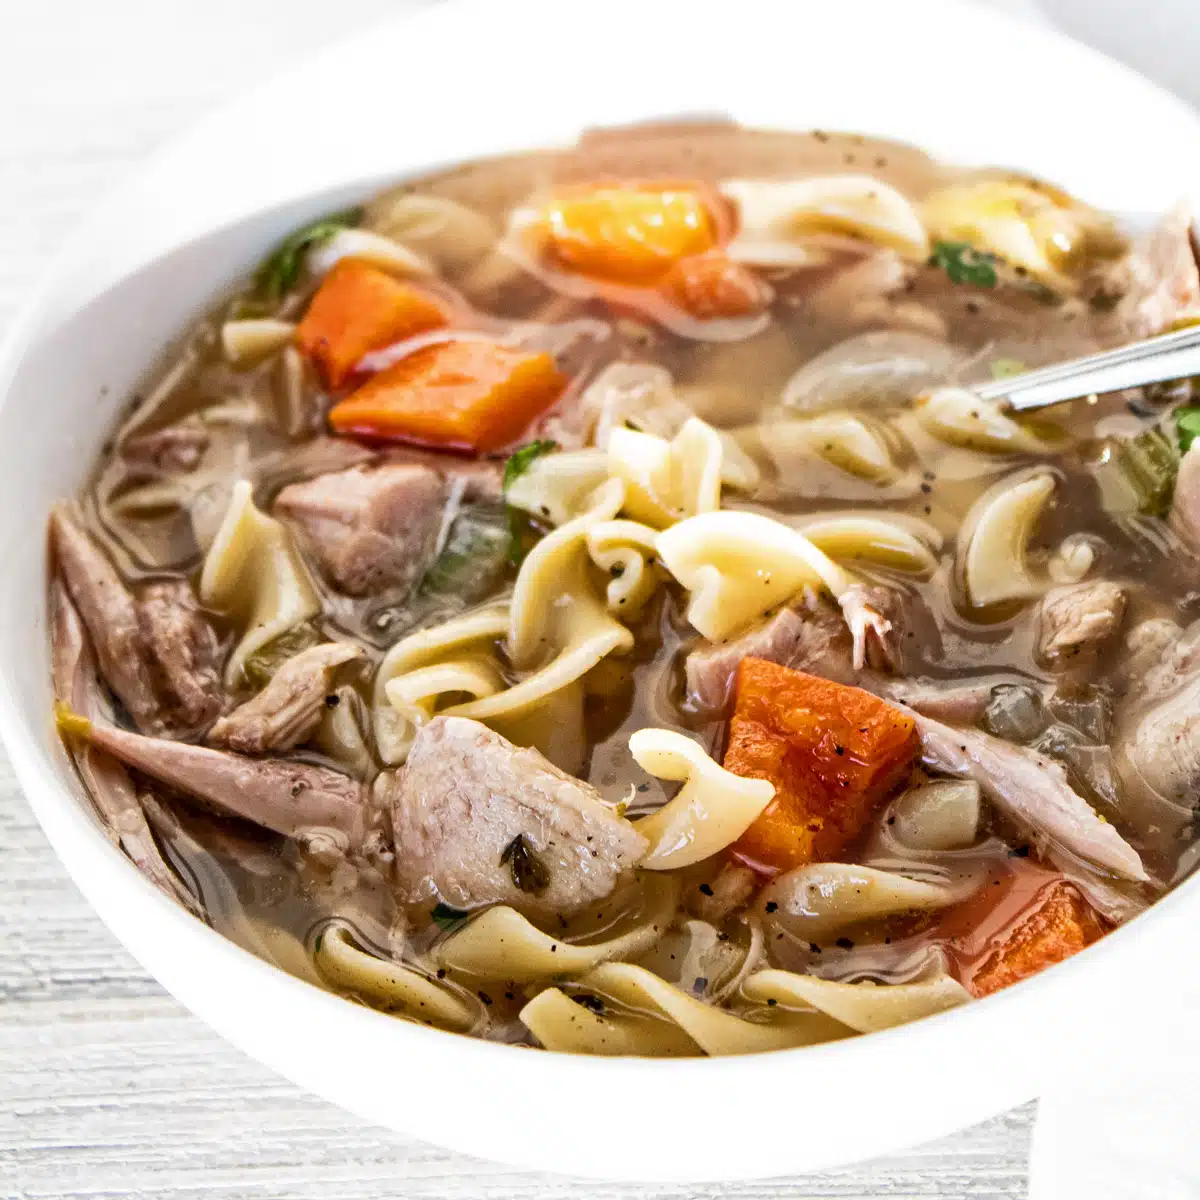 I migliori noodles per zuppa di noodle di pollo immagine della zuppa in una ciotola bianca.